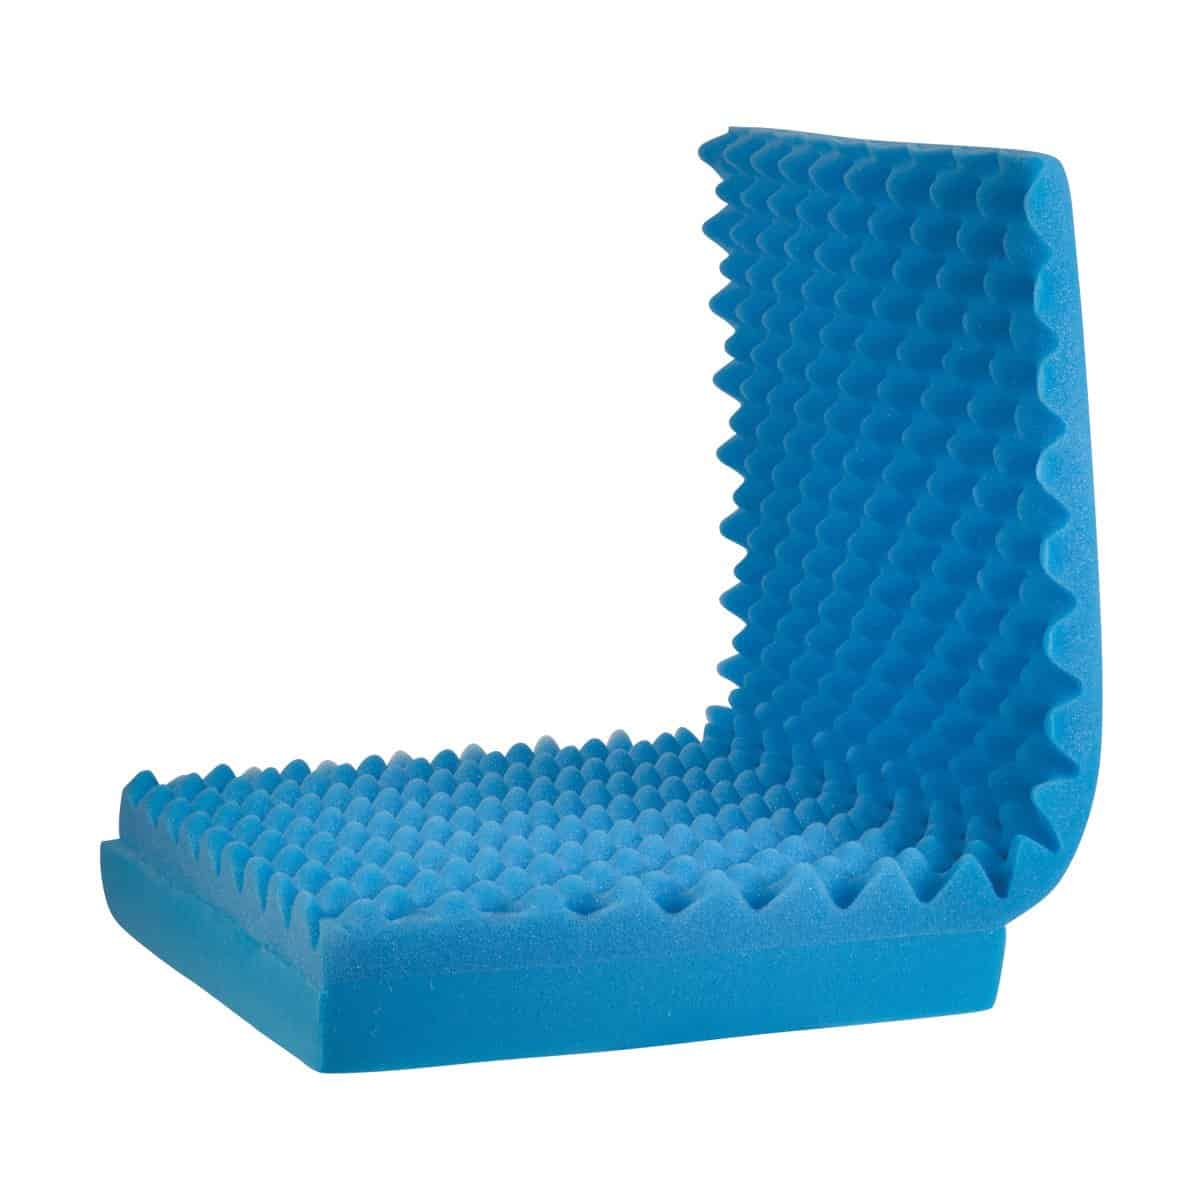 DMI Egg Crate Sculpted Foam Chair Cushion, Seat Cushion, Car Seat Cushion,  Office Chair Cushion or Wheelchair Cushion to Relieve Back Pain, Tail Bone  Pain, Sciatica, 18x16x4, Plaid Cover 